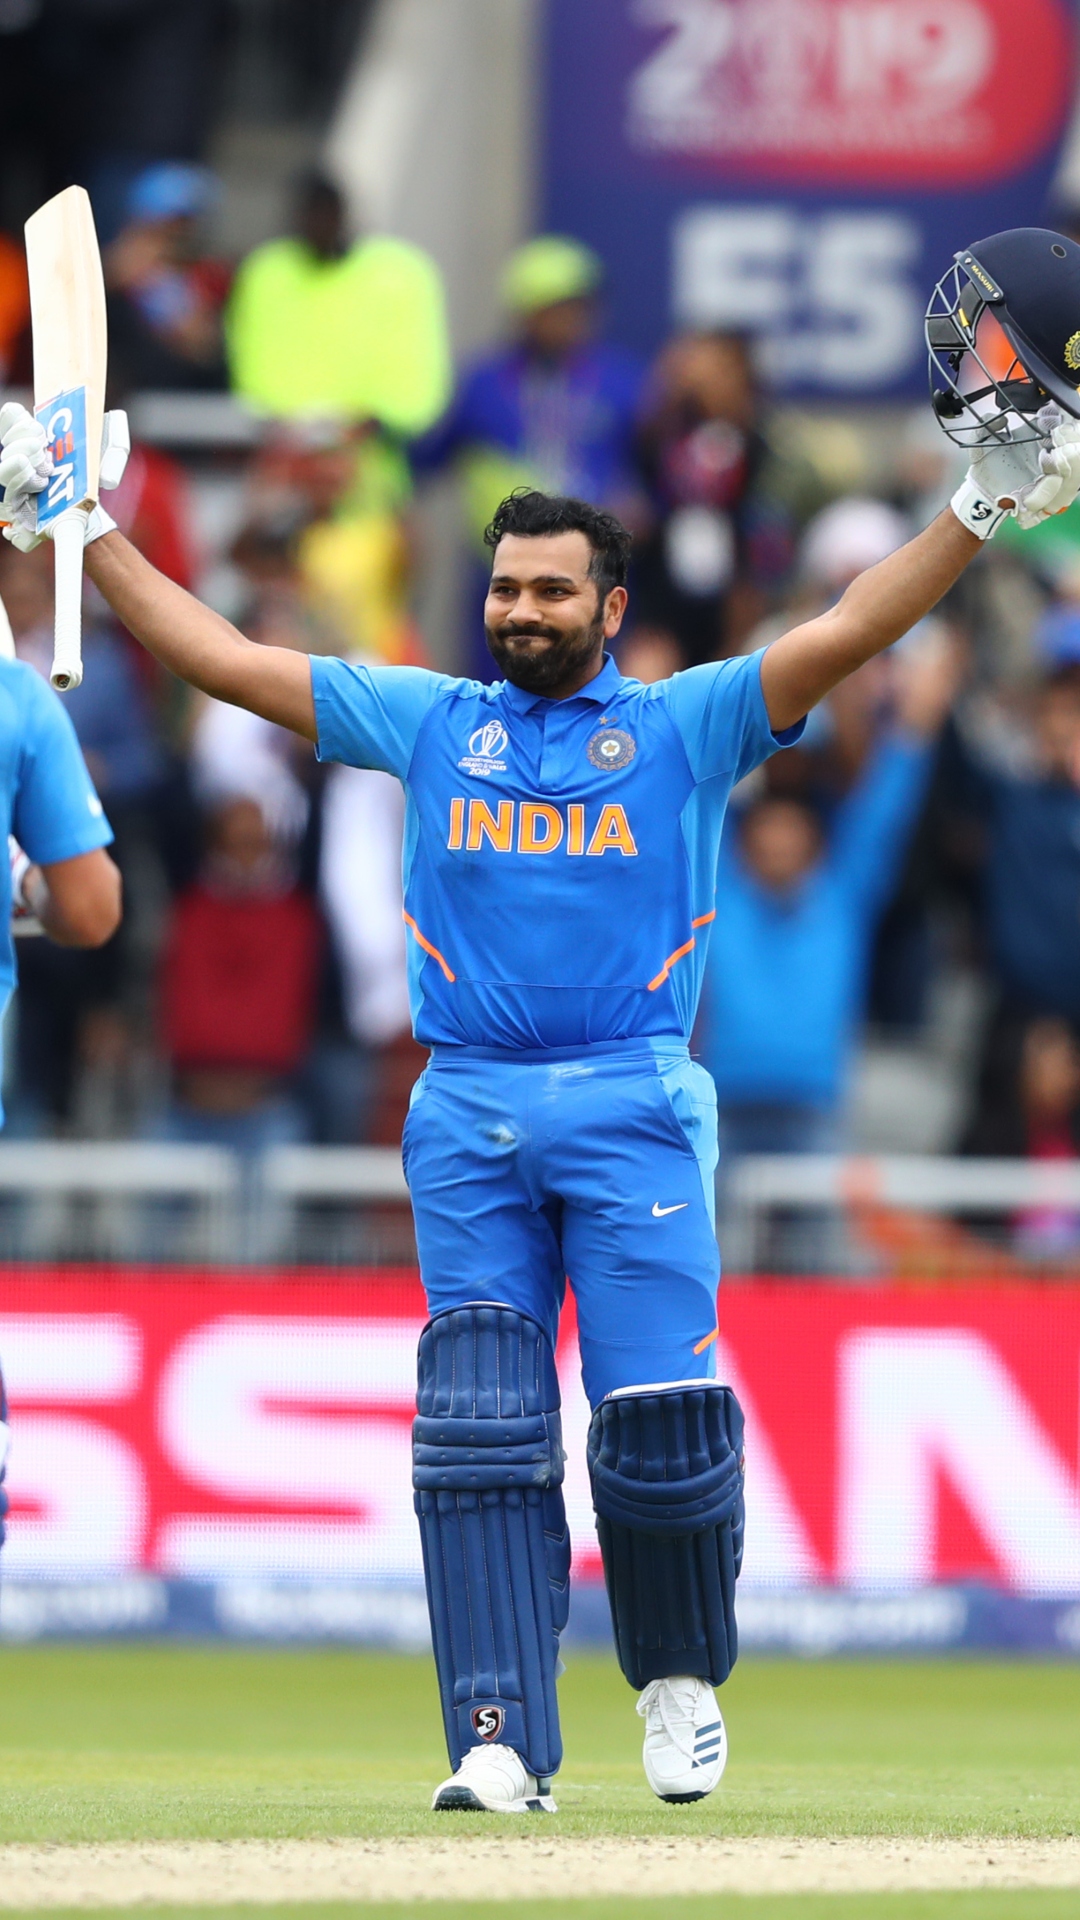 ODI में पाकिस्तान के खिलाफ टीम इंडिया के कप्तान रोहित शर्मा के आंकड़ें